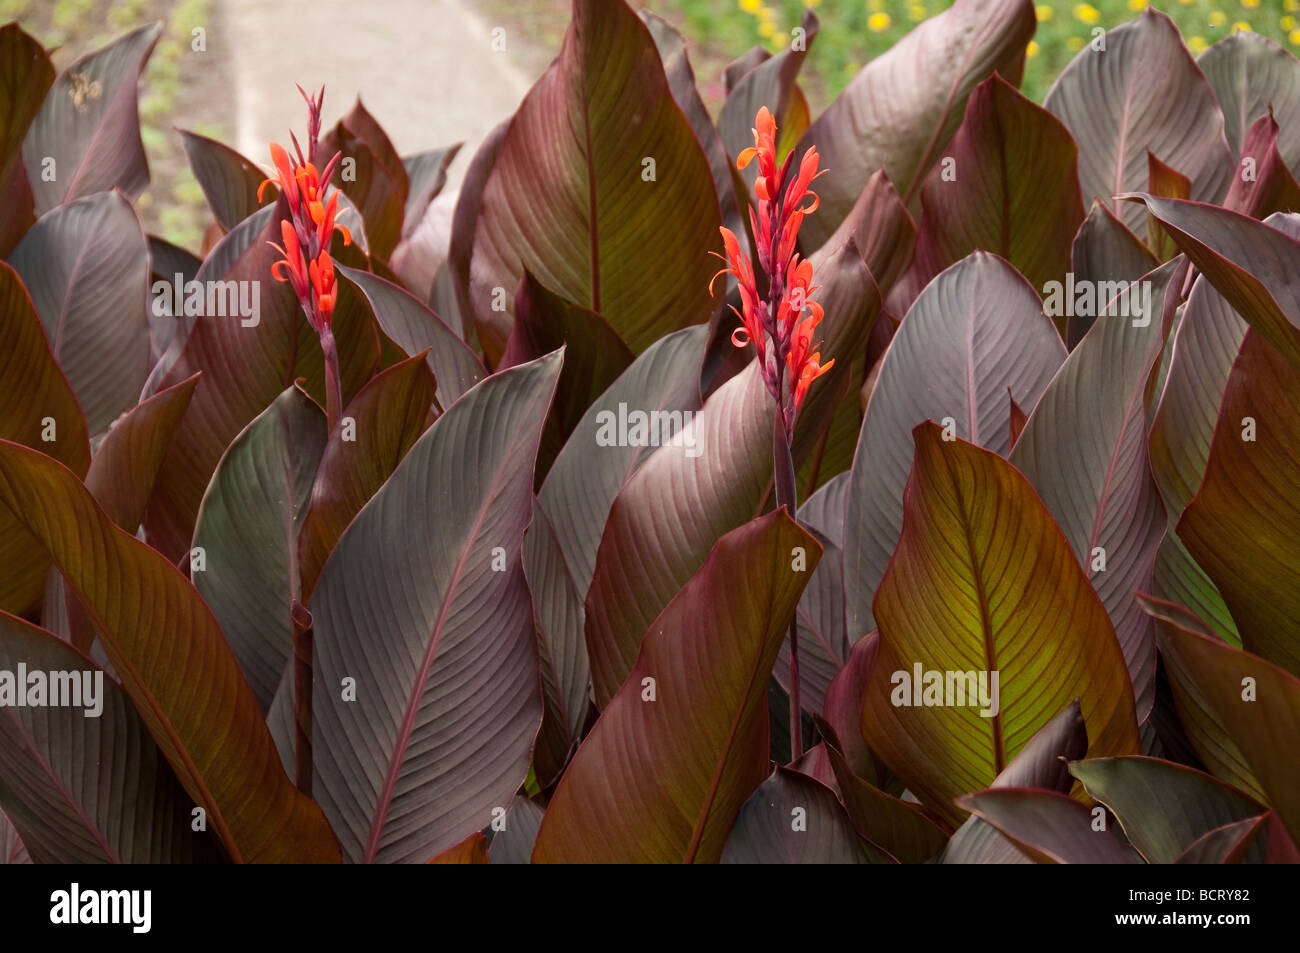 Canna lily. Stock Photo